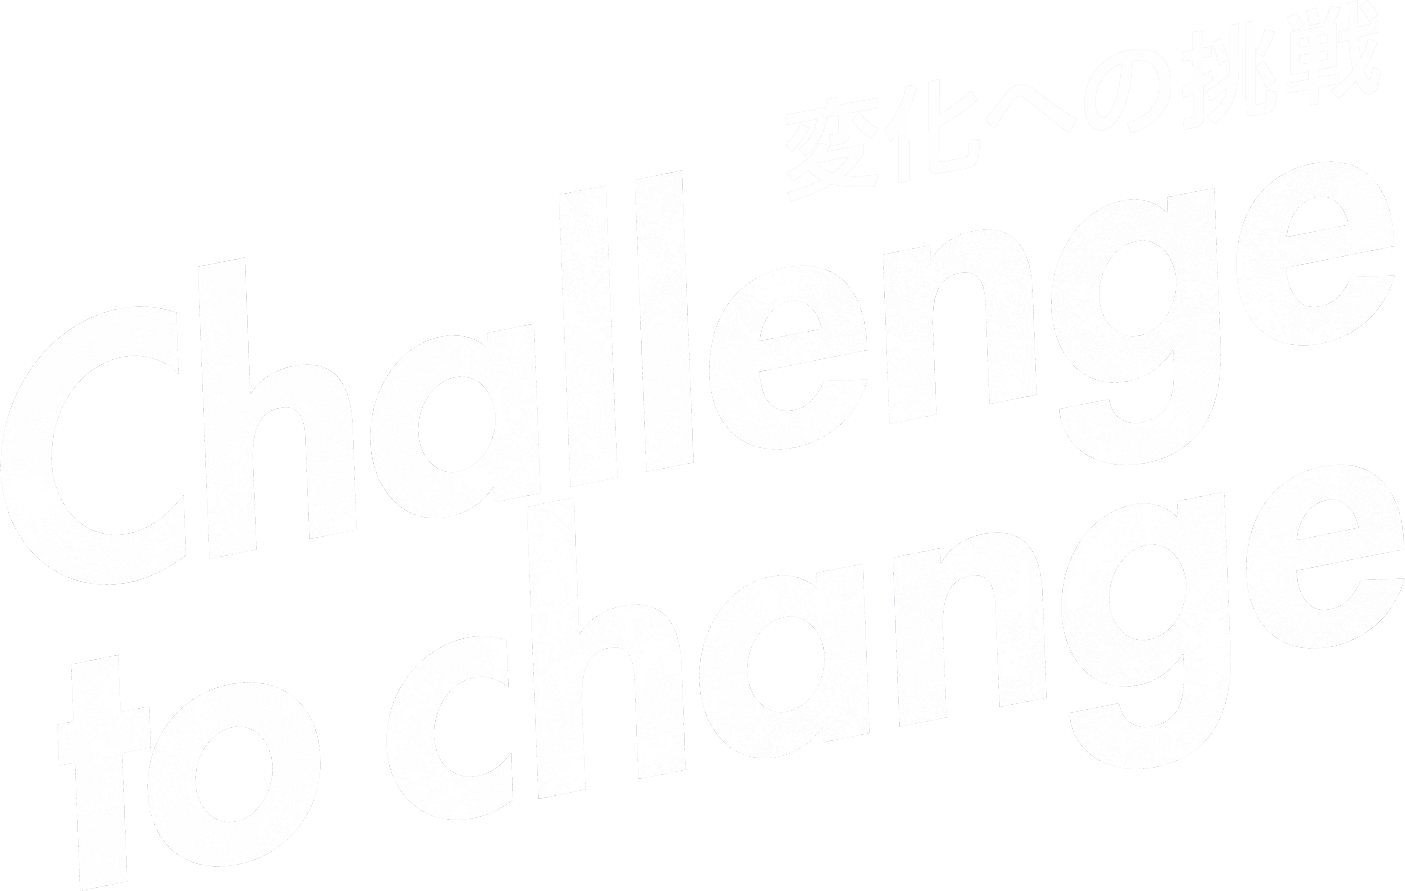 変化への挑戦 Challenge to change